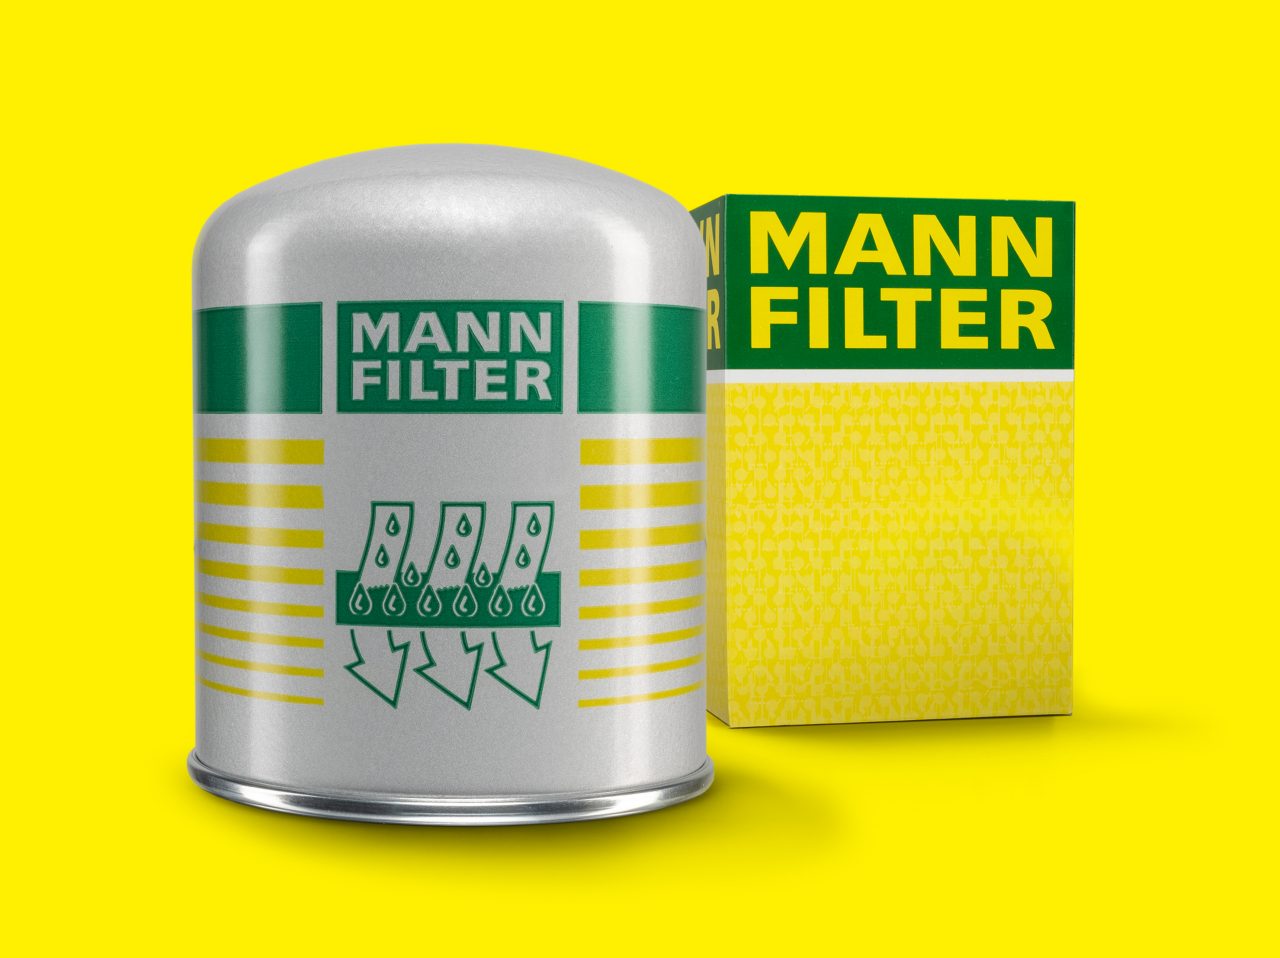 https://www.mann-filter.com/content/mann-filter/mann-filter-com/sg-en/parts/special-applications/_jcr_content/root/container/teaser_content_grid/item0.coreimg.jpeg/1682425472816/mann-filter-trockenmittelbox-tb13941.jpeg